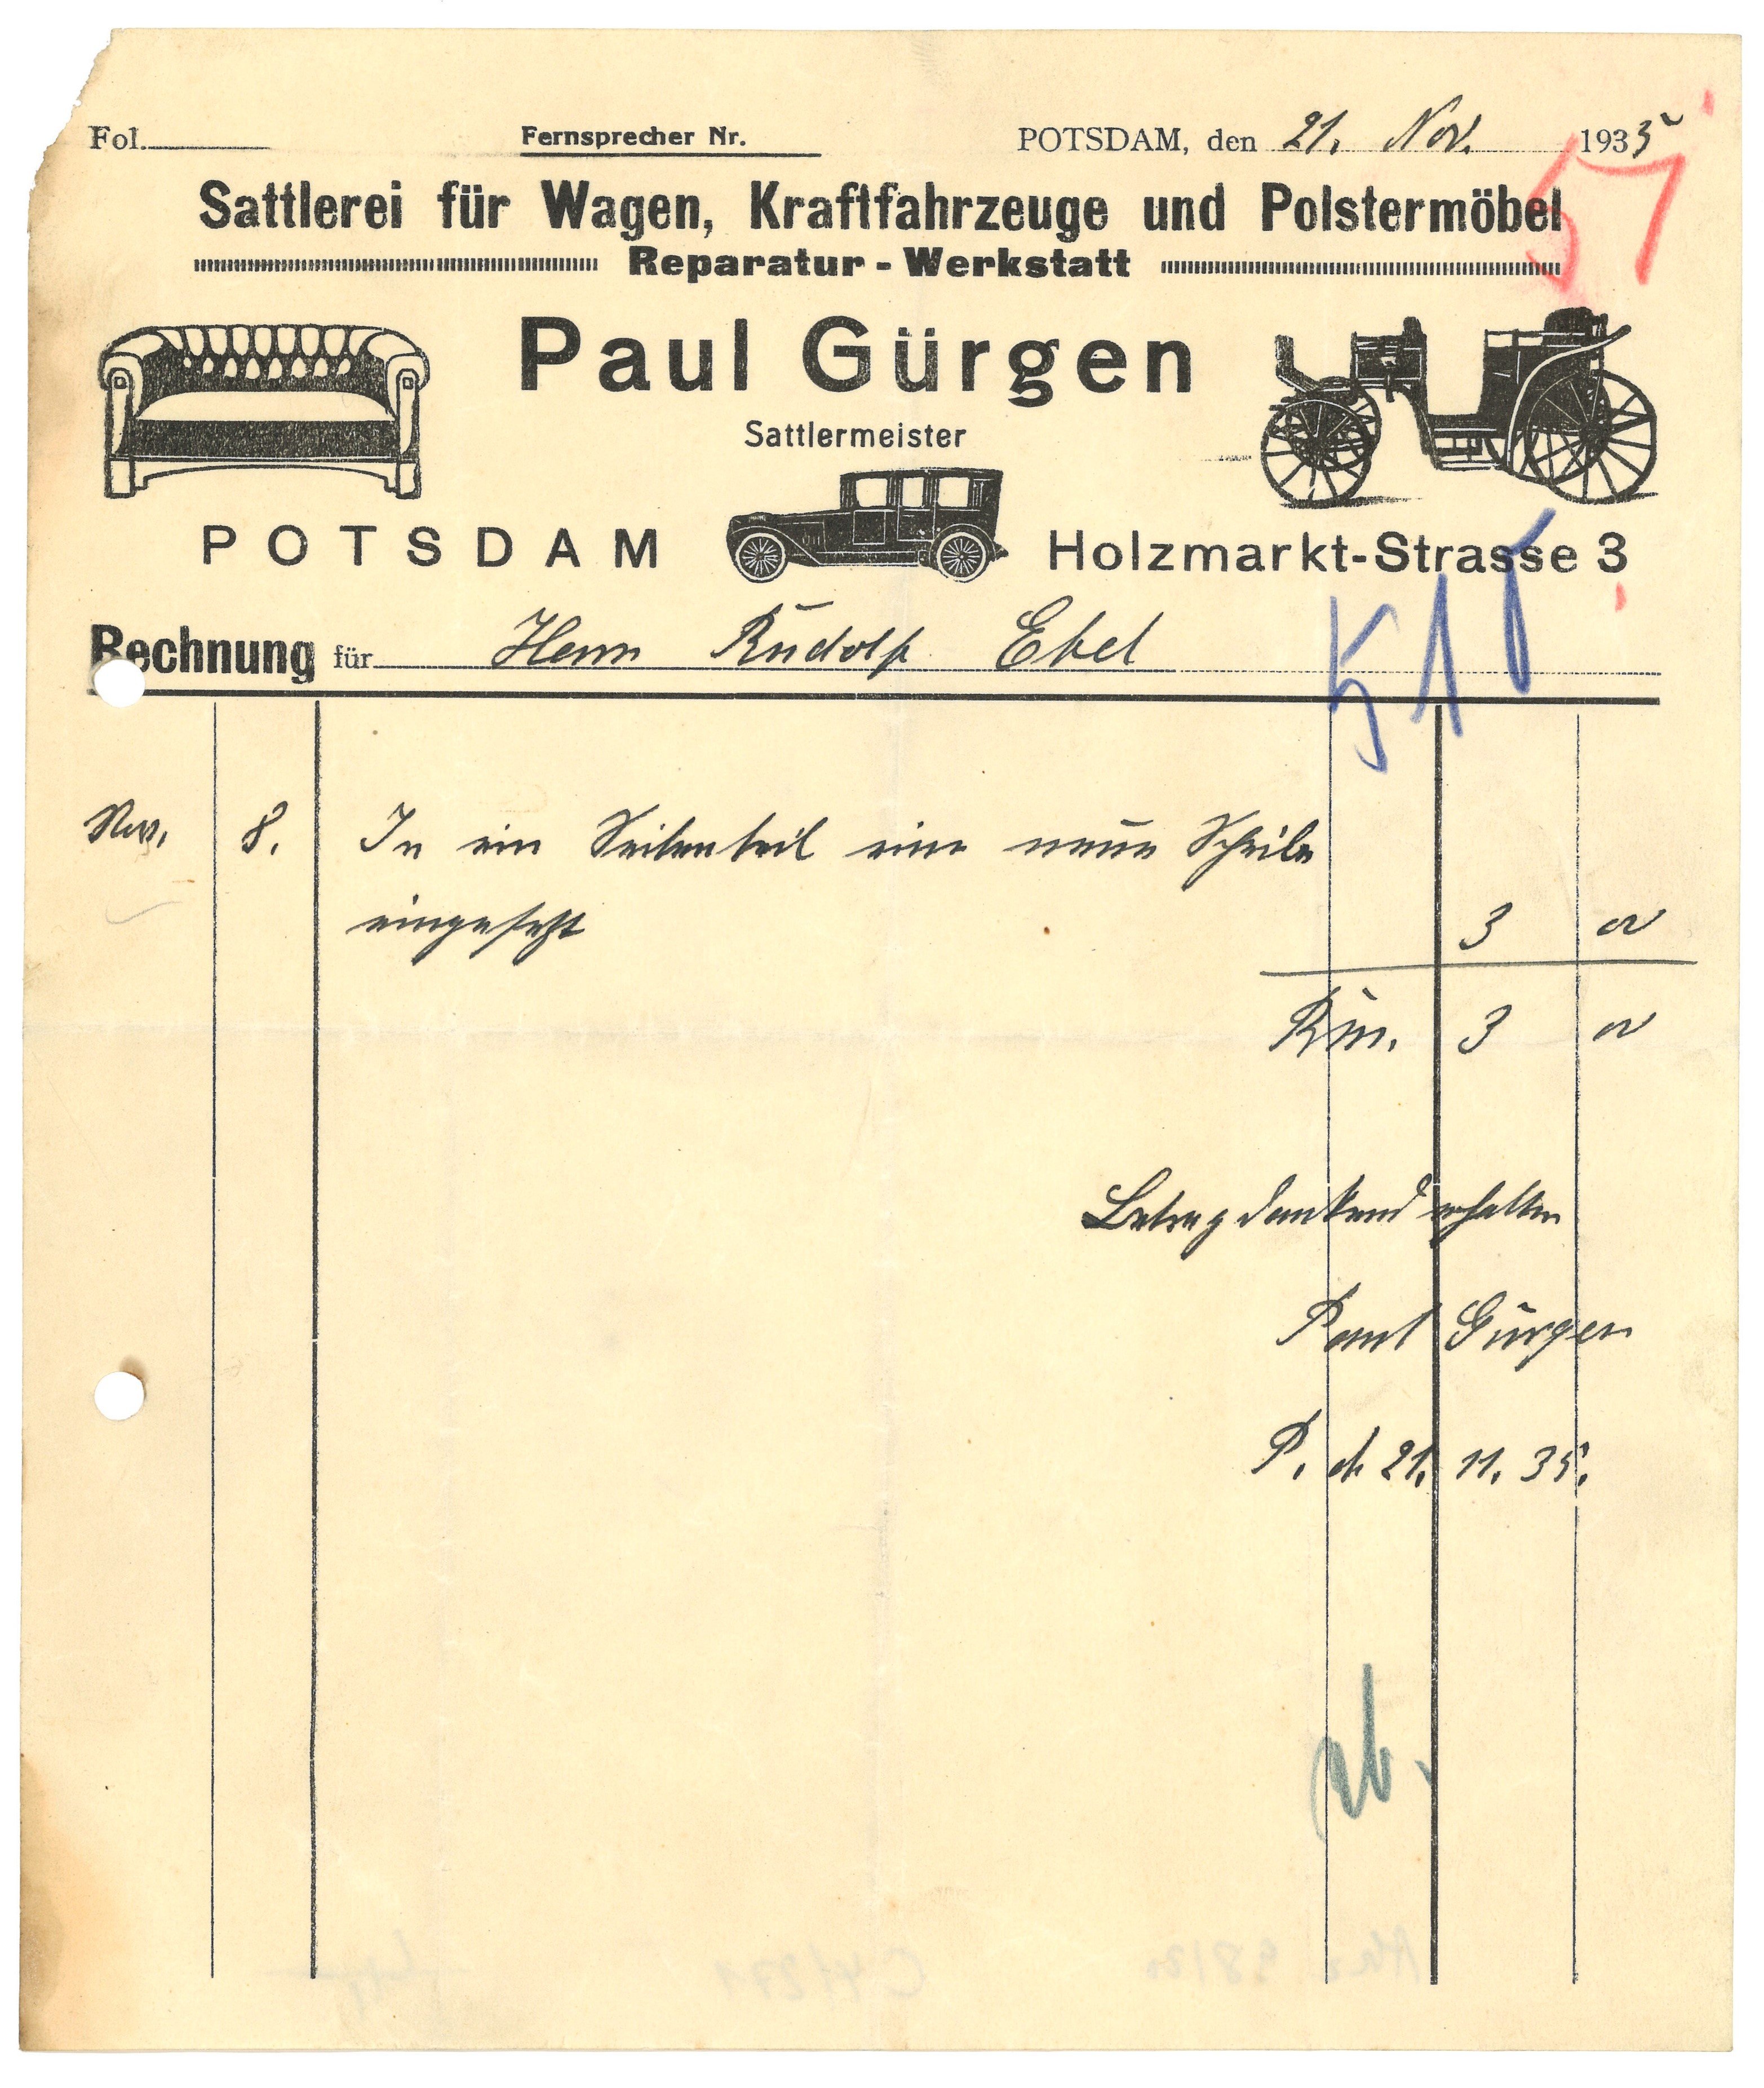 Rechnung der Sattlerei Paul Gürgen in Potsdam 1935 (Landesgeschichtliche Vereinigung für die Mark Brandenburg e.V., Archiv CC BY)